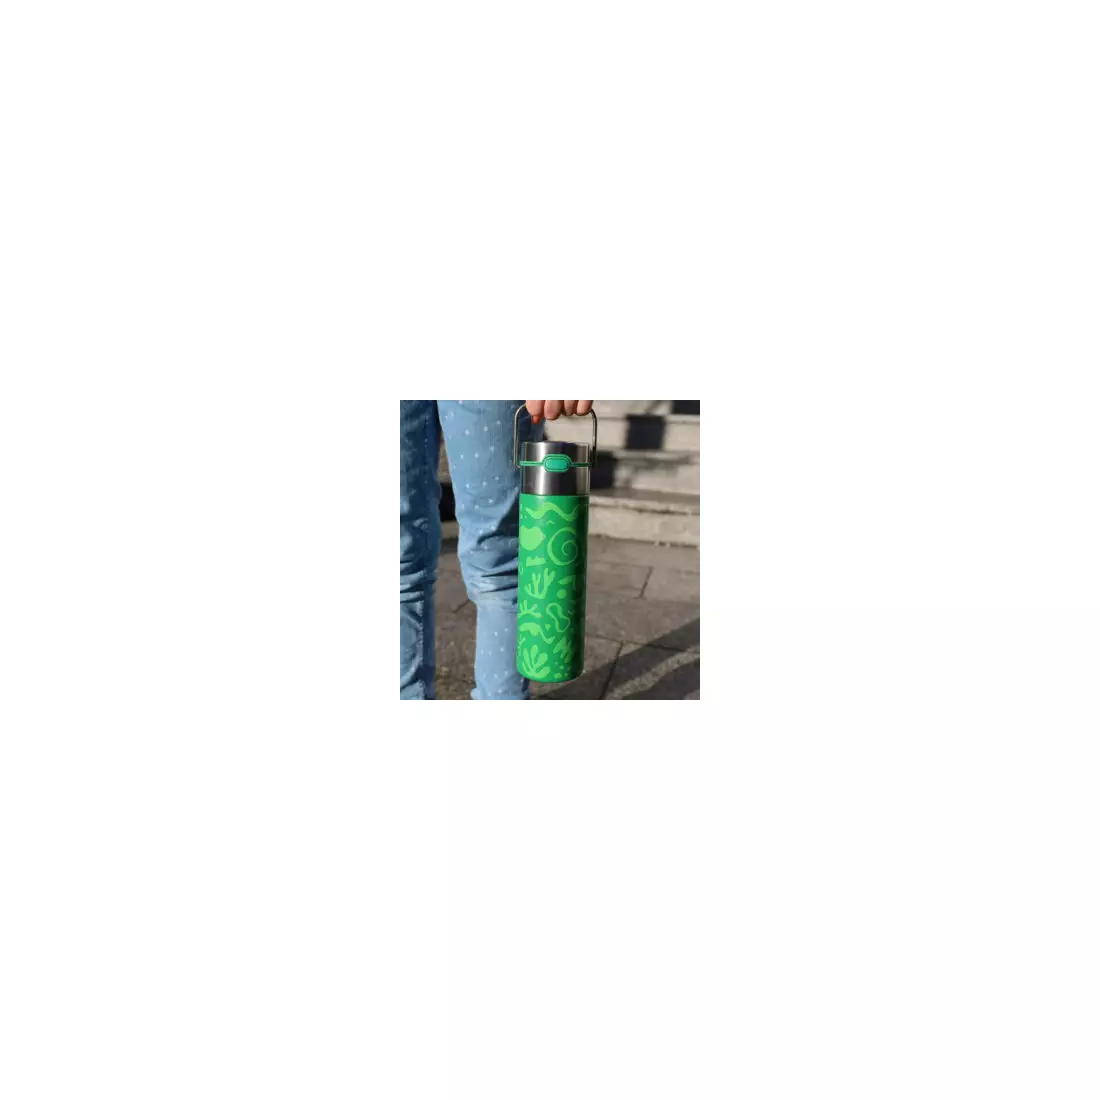 EIGENART LEEZA thermal bottle 500 ml, opera green